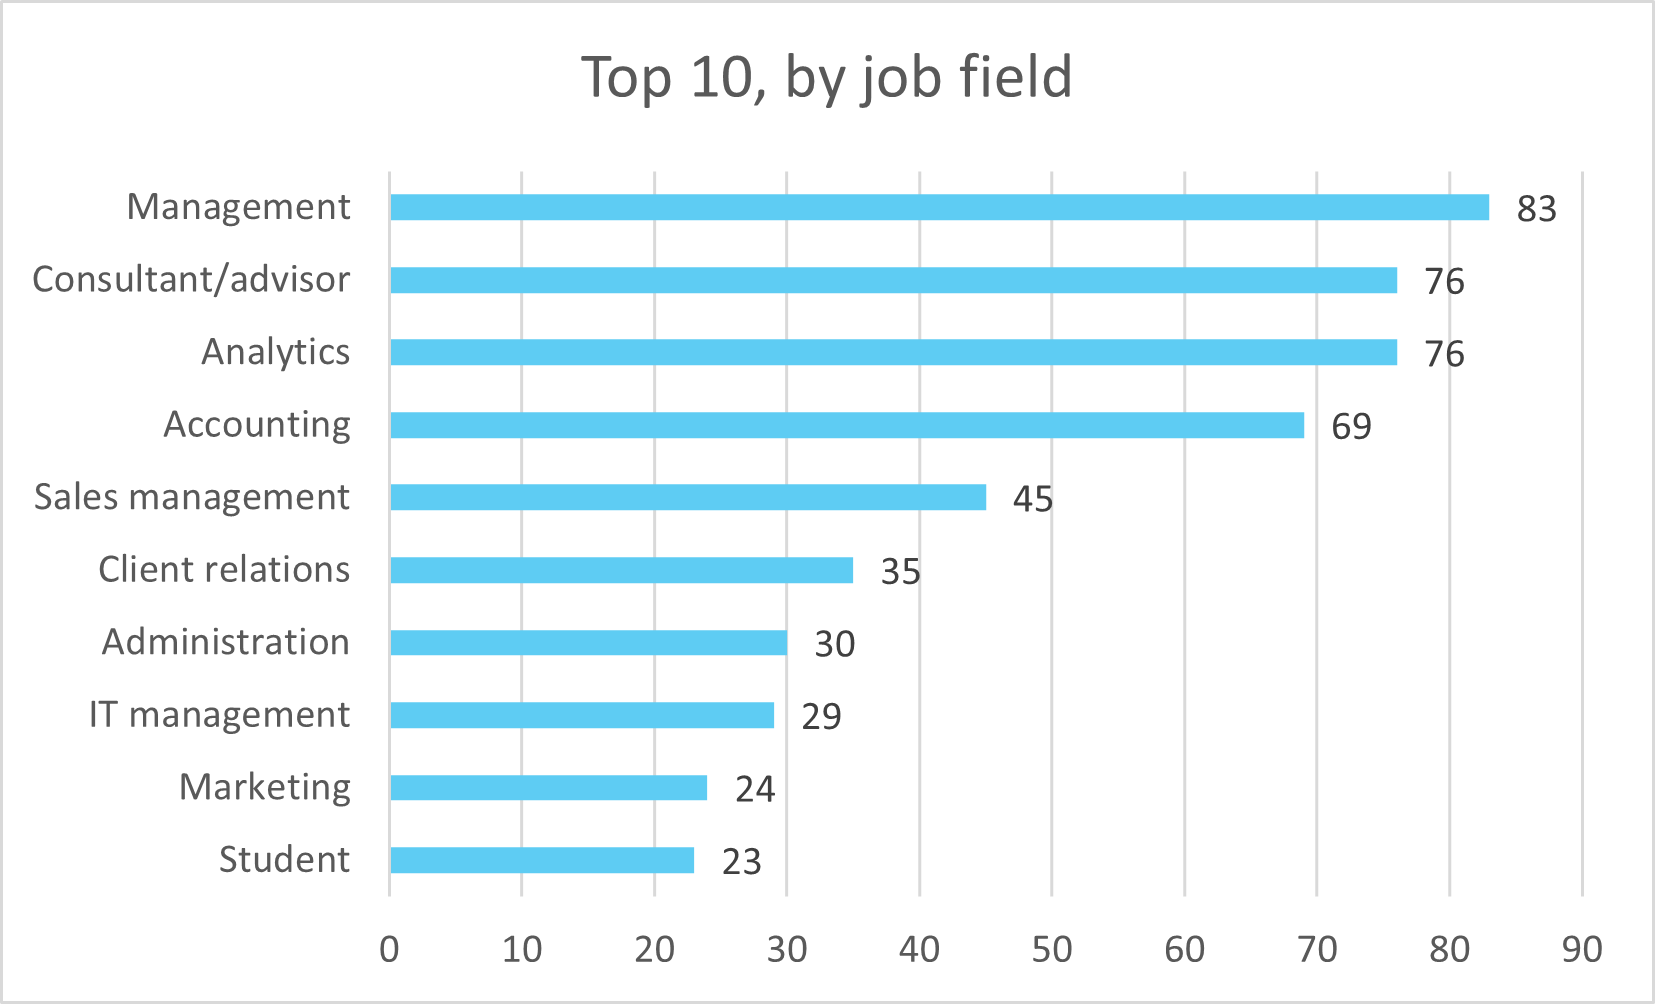 Top 10 job fields